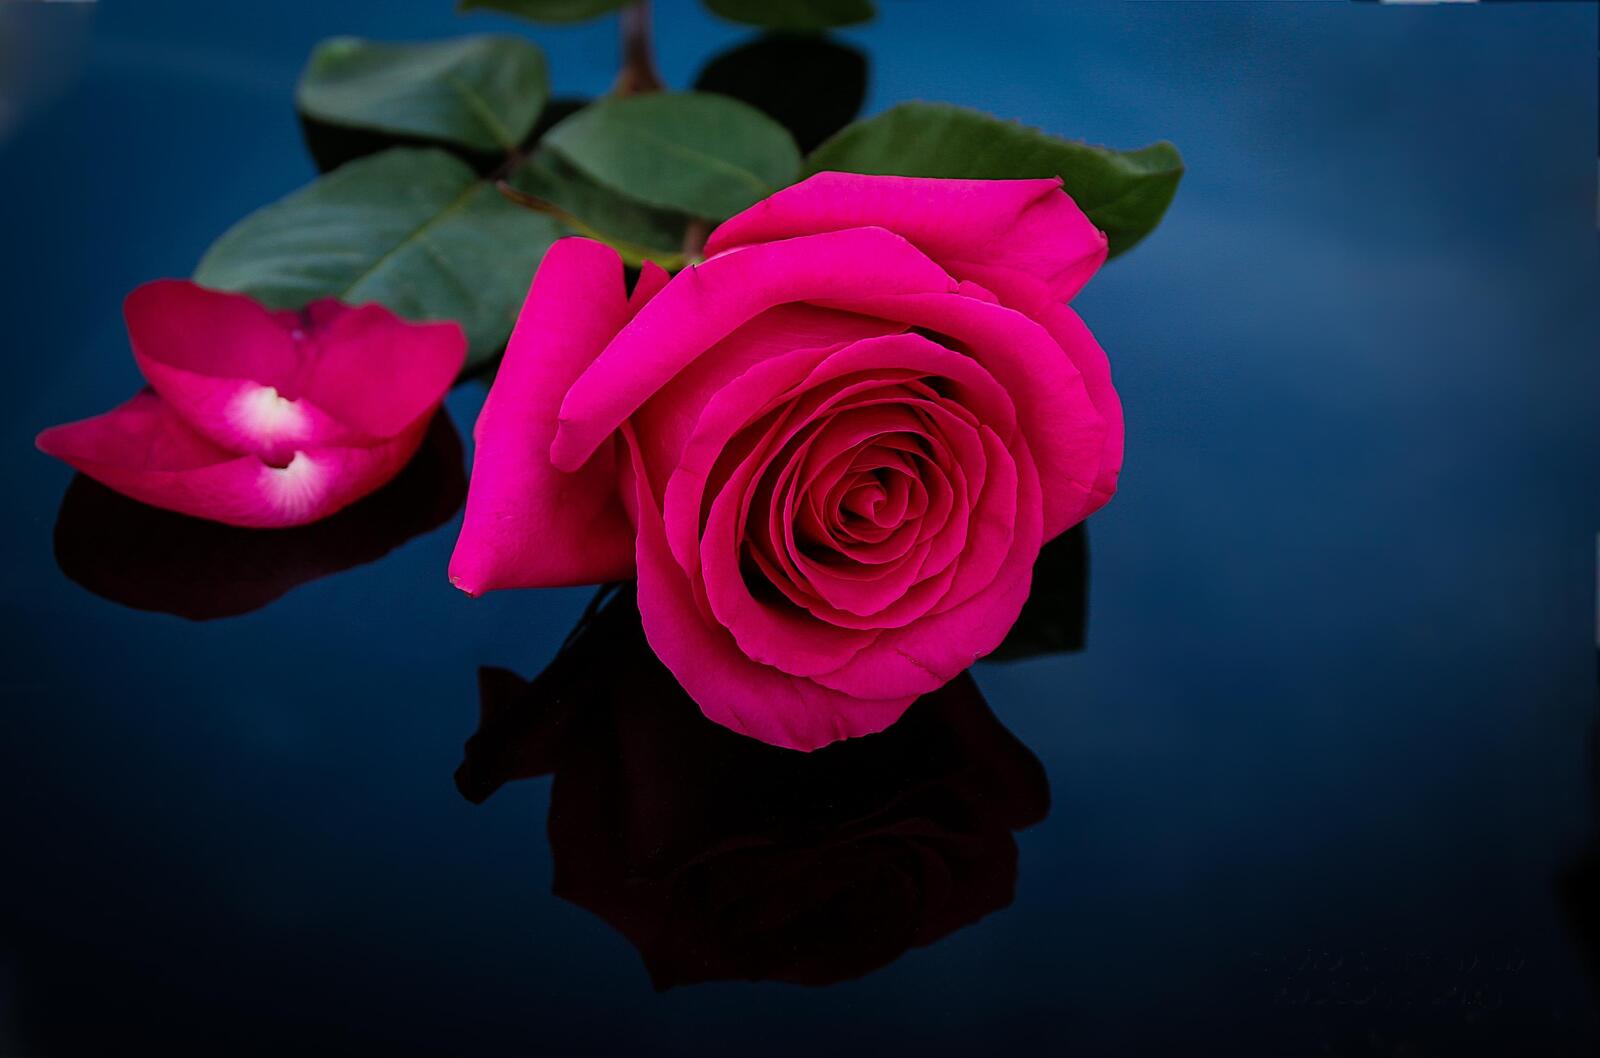 Обои одинокая роза цветок флора на рабочий стол